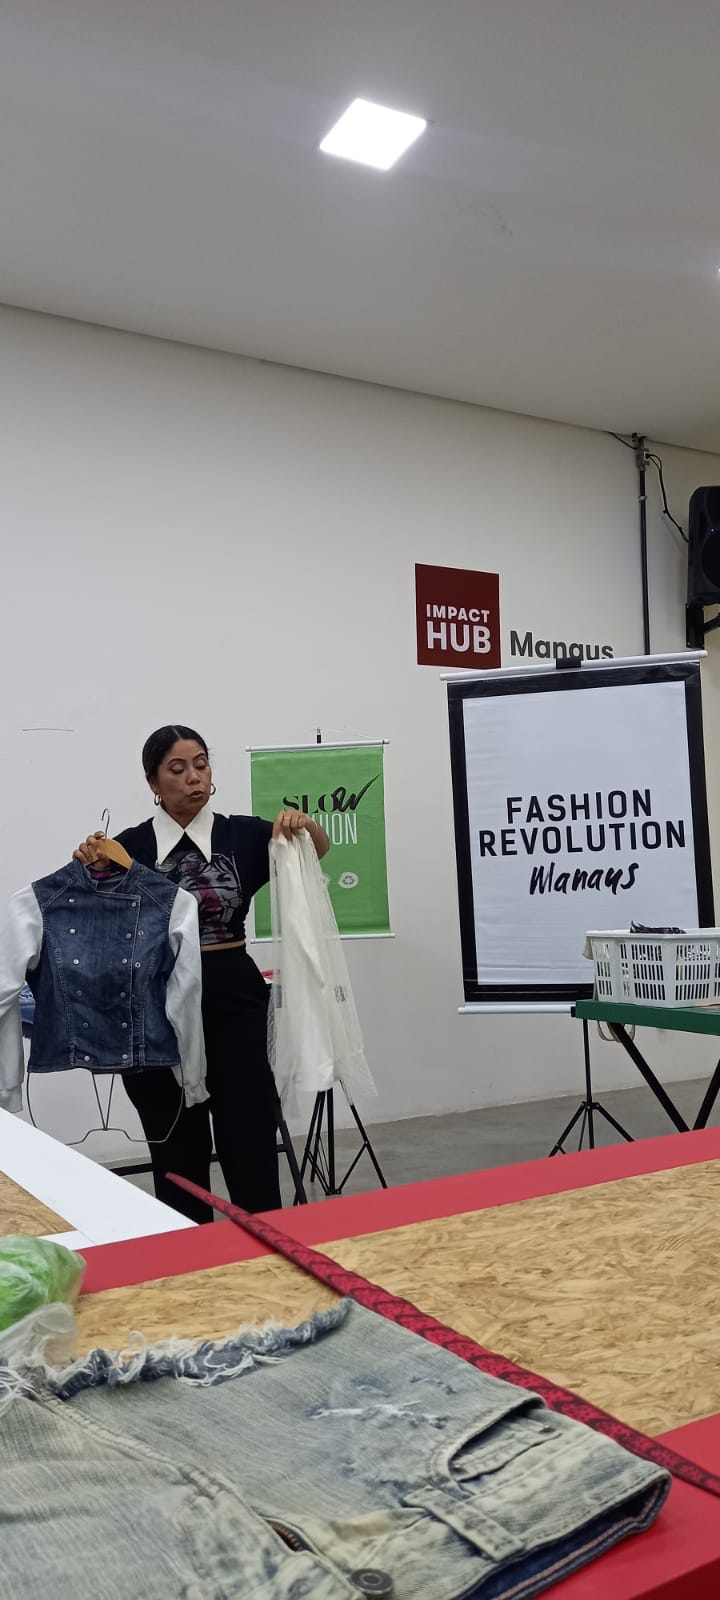 Maior evento ativista de moda do mundo, o Fashion Revolution lança seu  manifesto. – Colabora Moda Sustentável